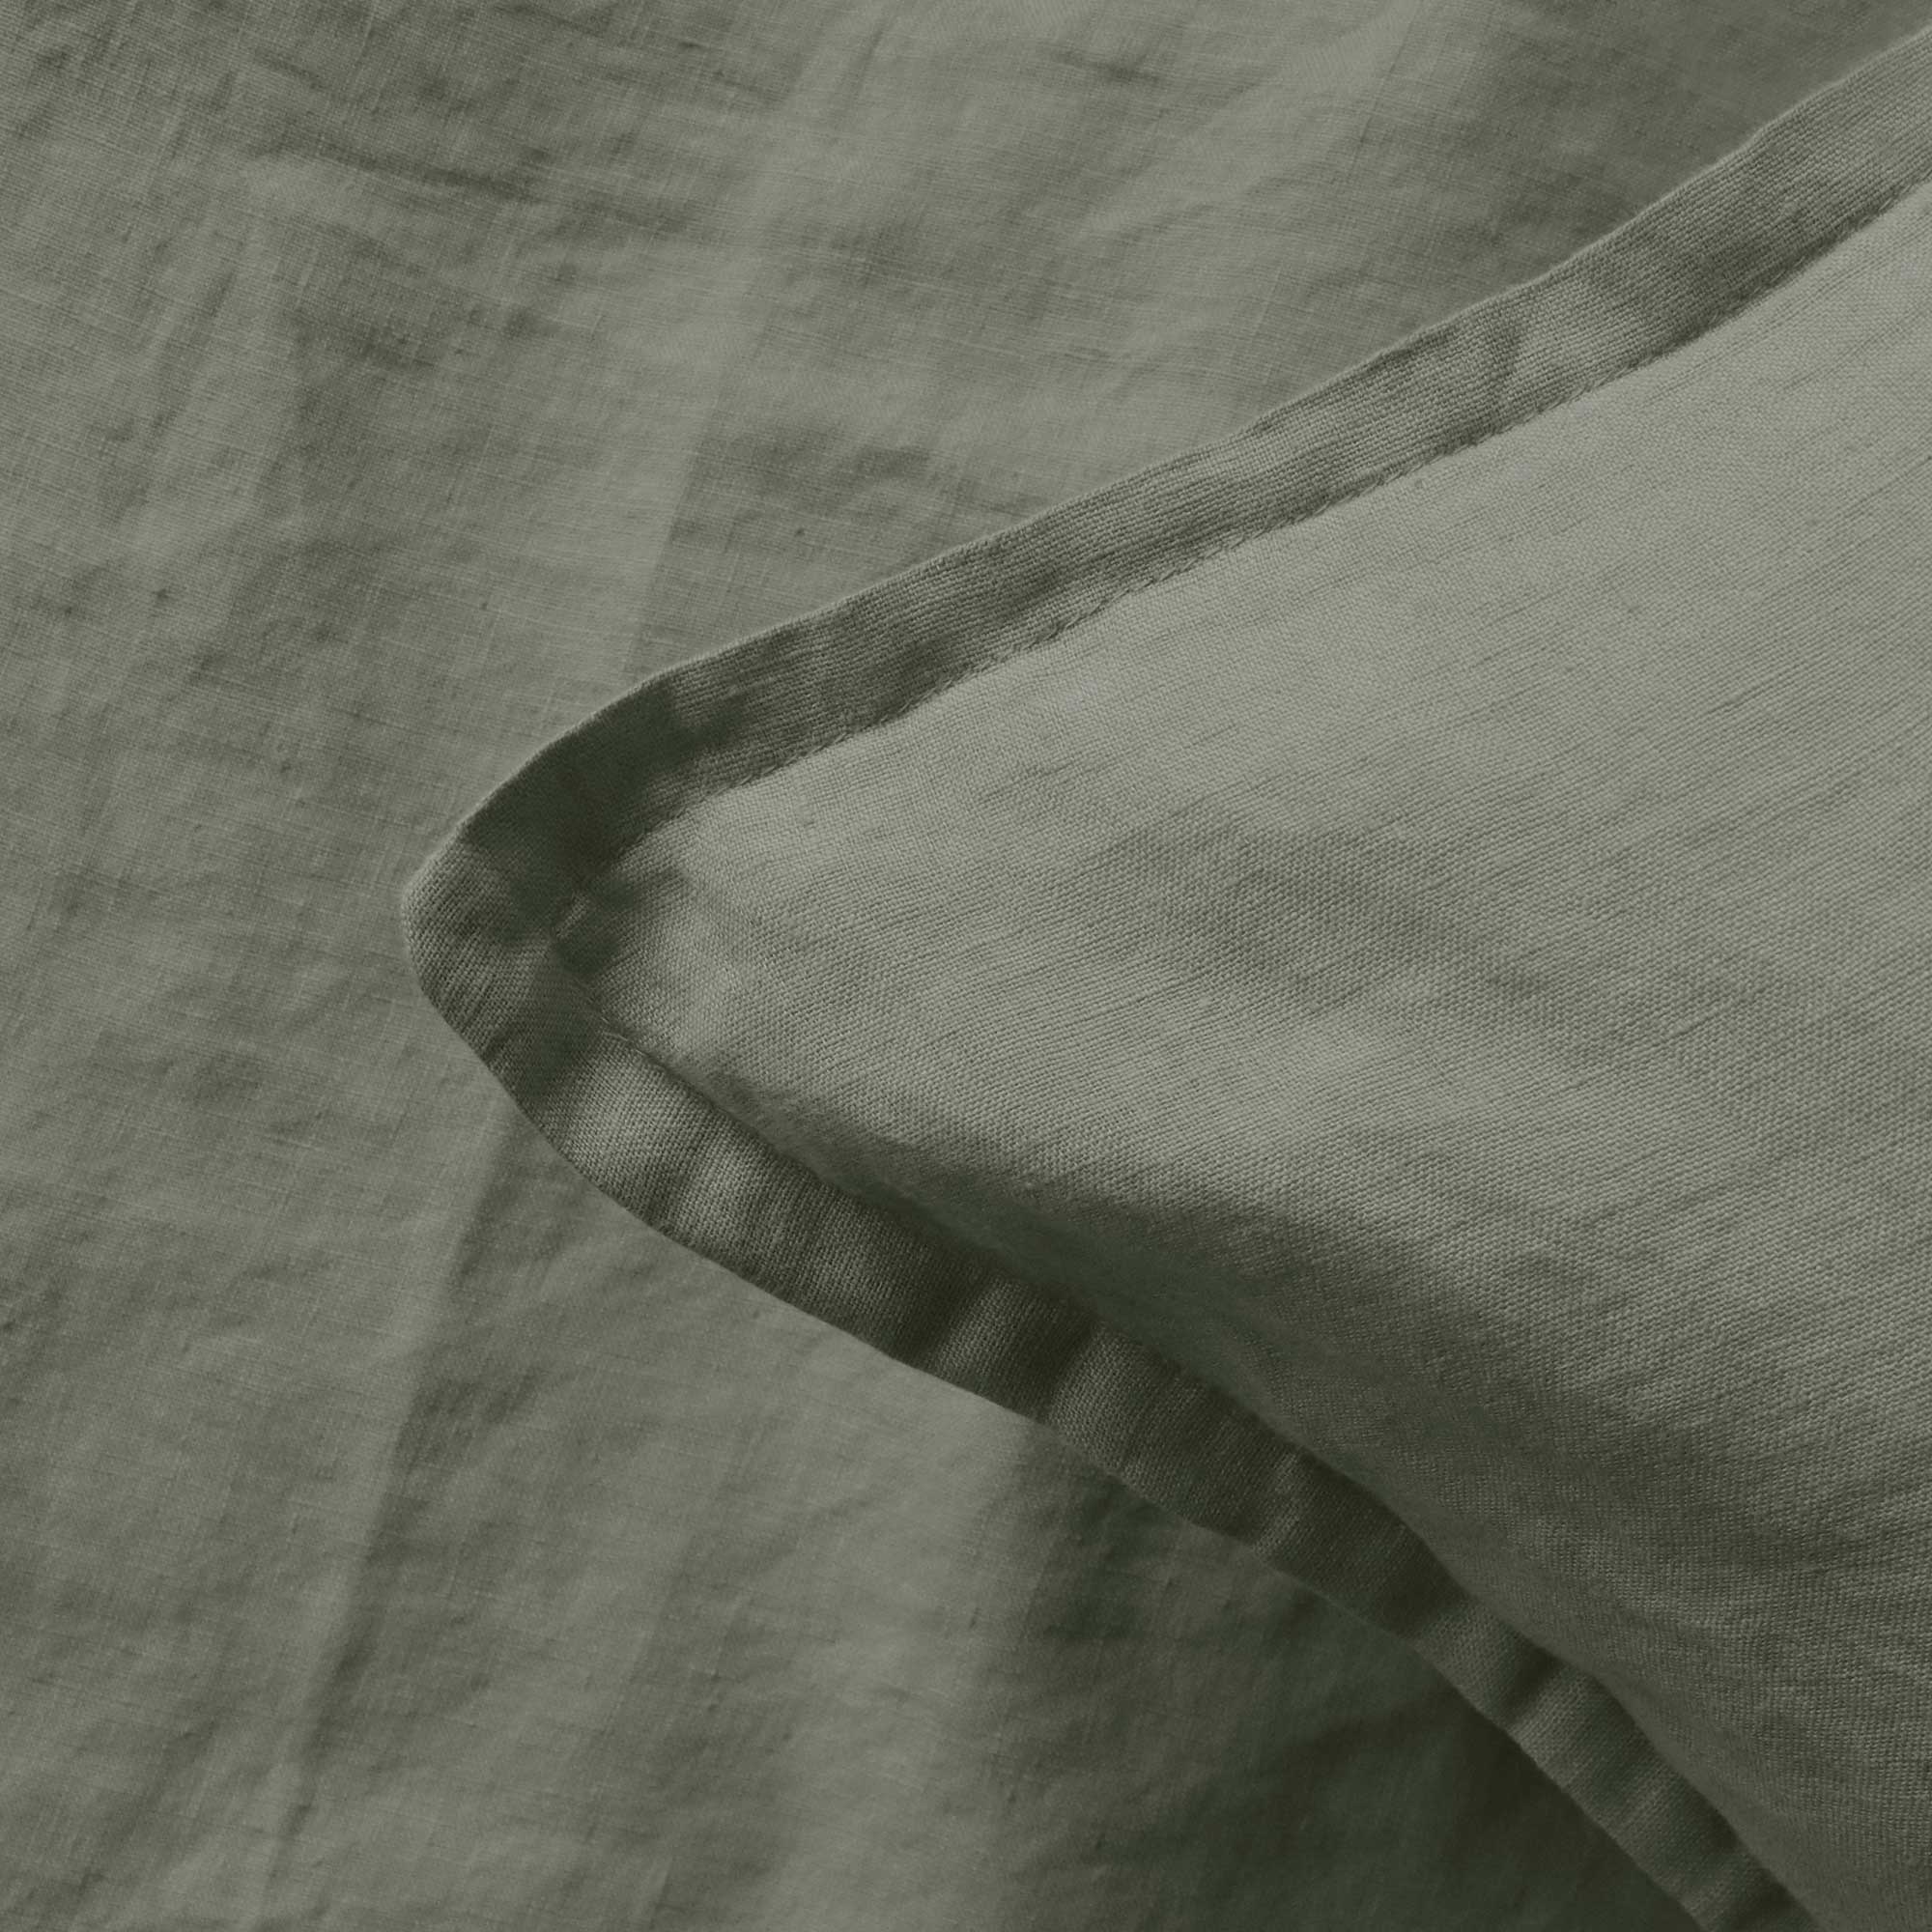 Matt & Rose Set Pillowcases Moss Green - 50 x 70 cm - 100% Linen